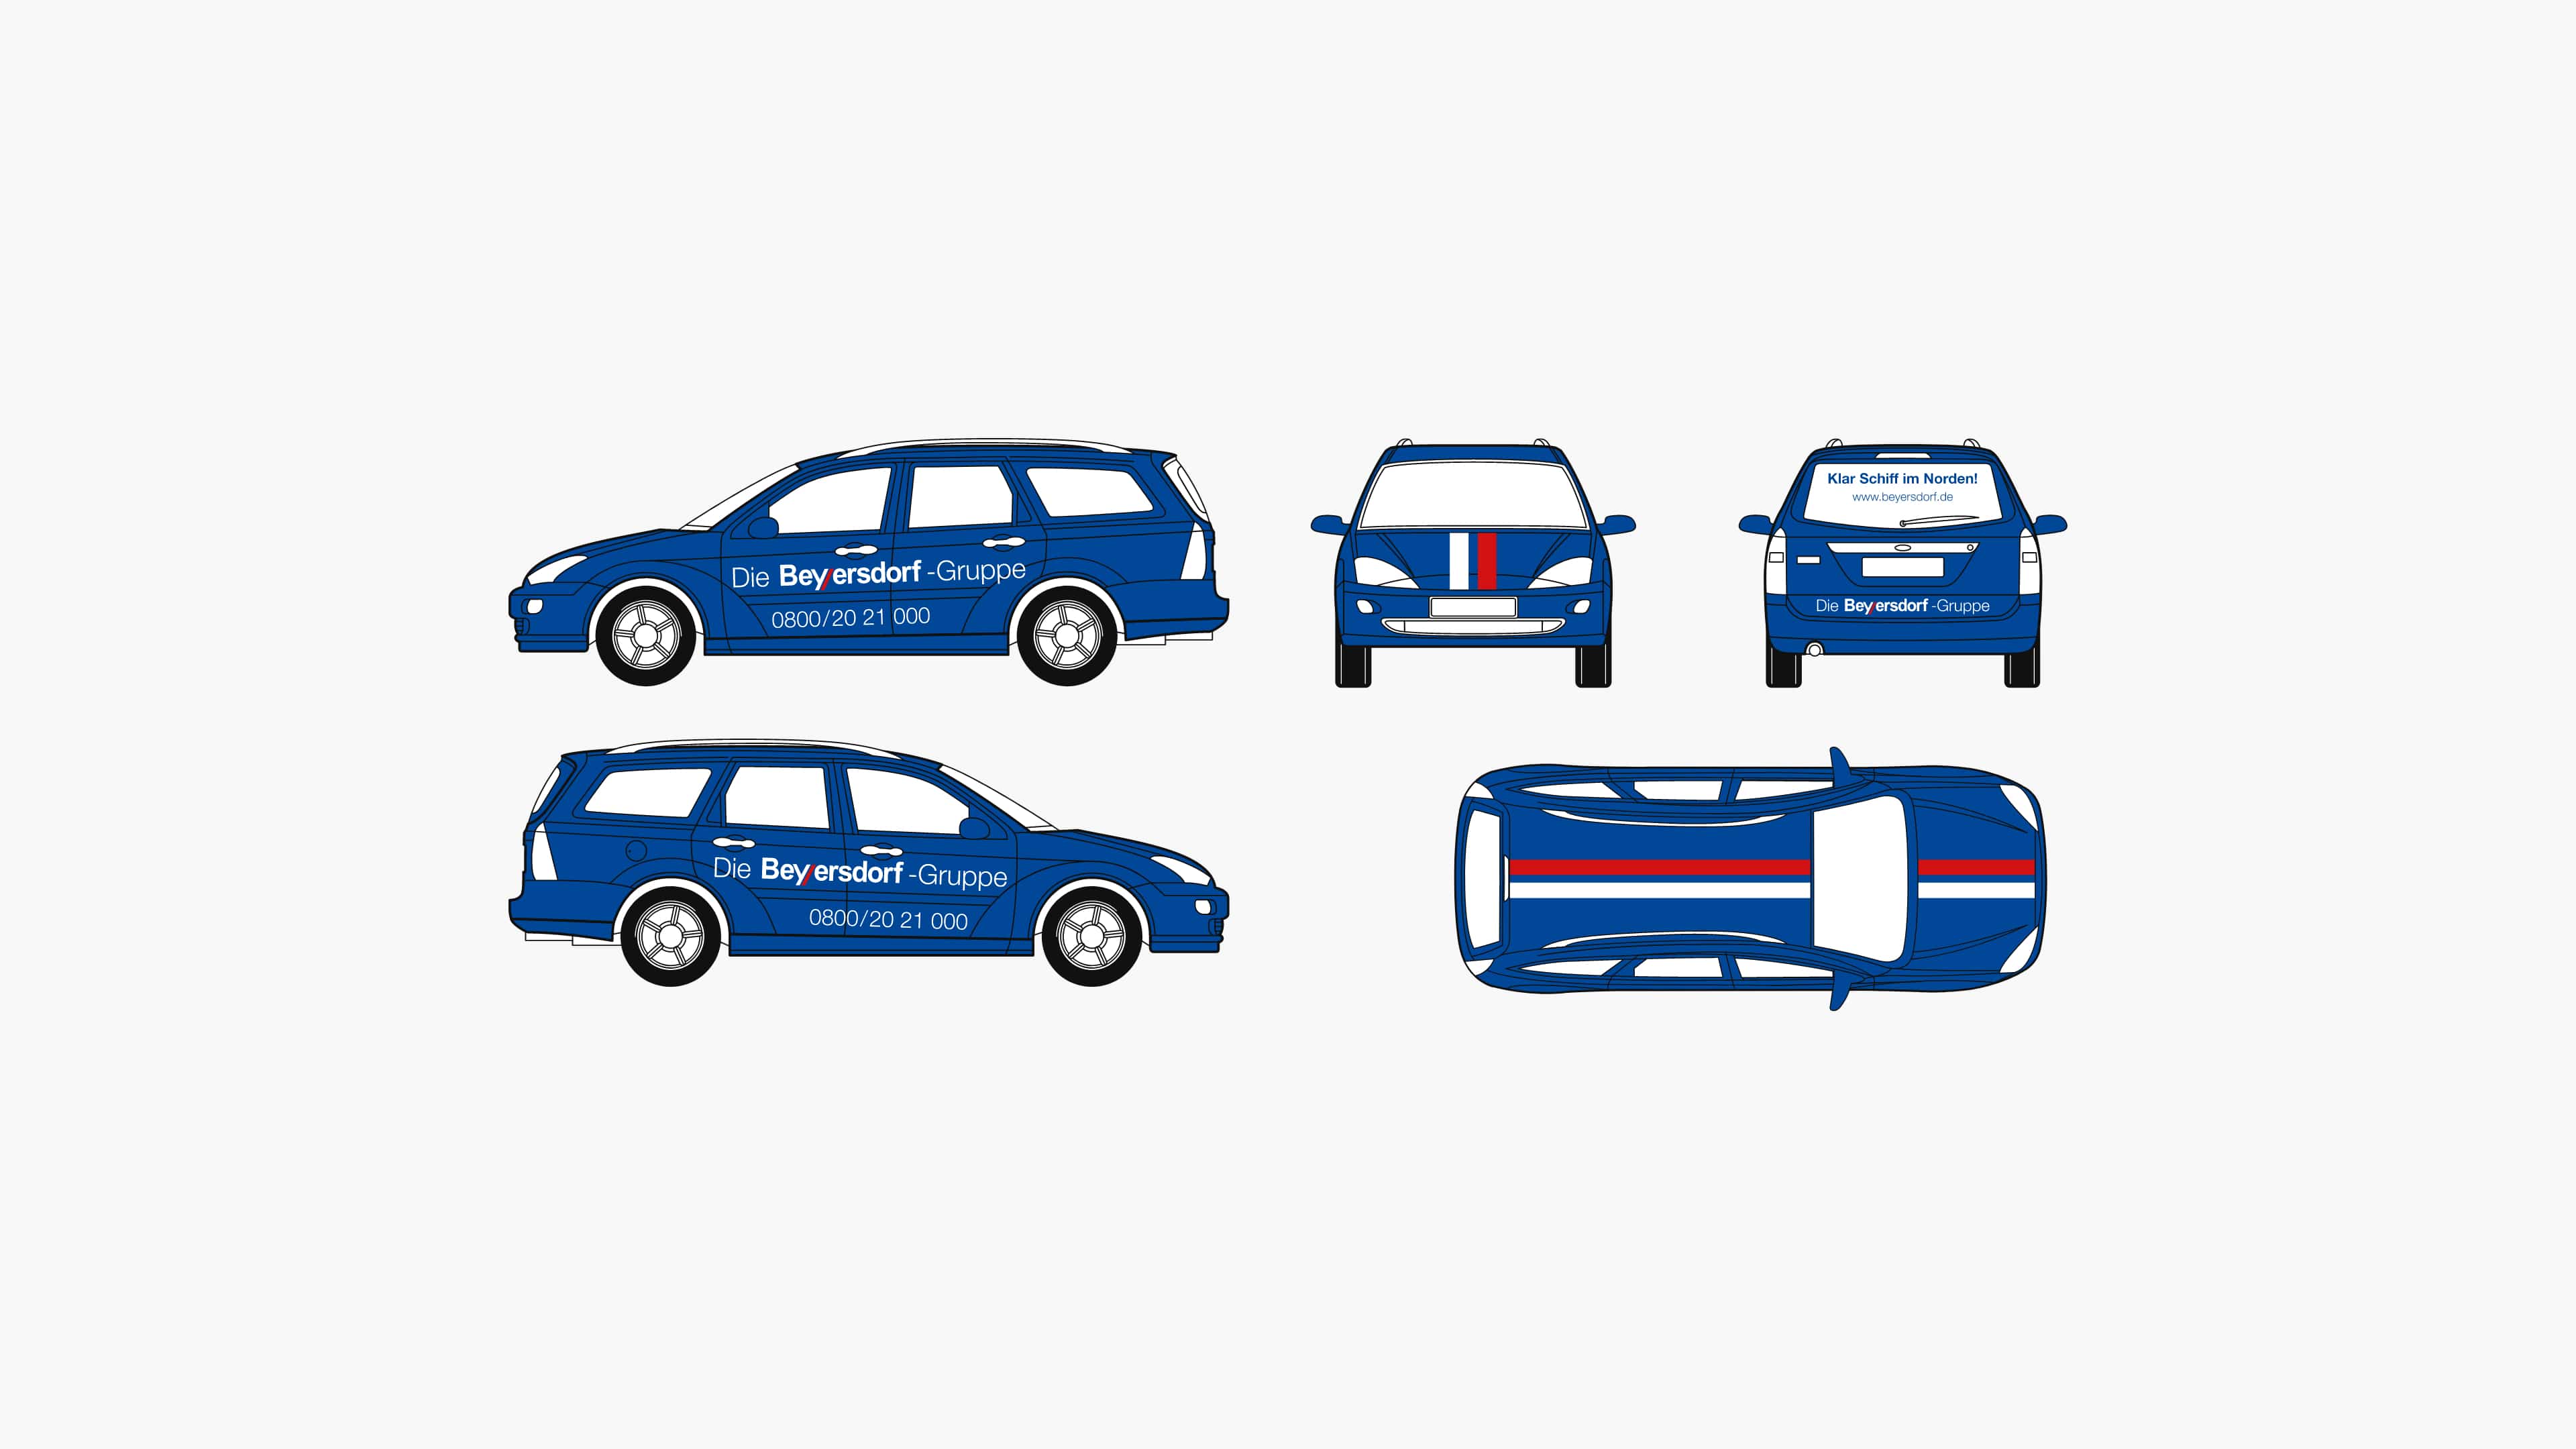 Visualisierung der Beyersdorf-Fahrzeugbeschriftung auf einem blauen PKW